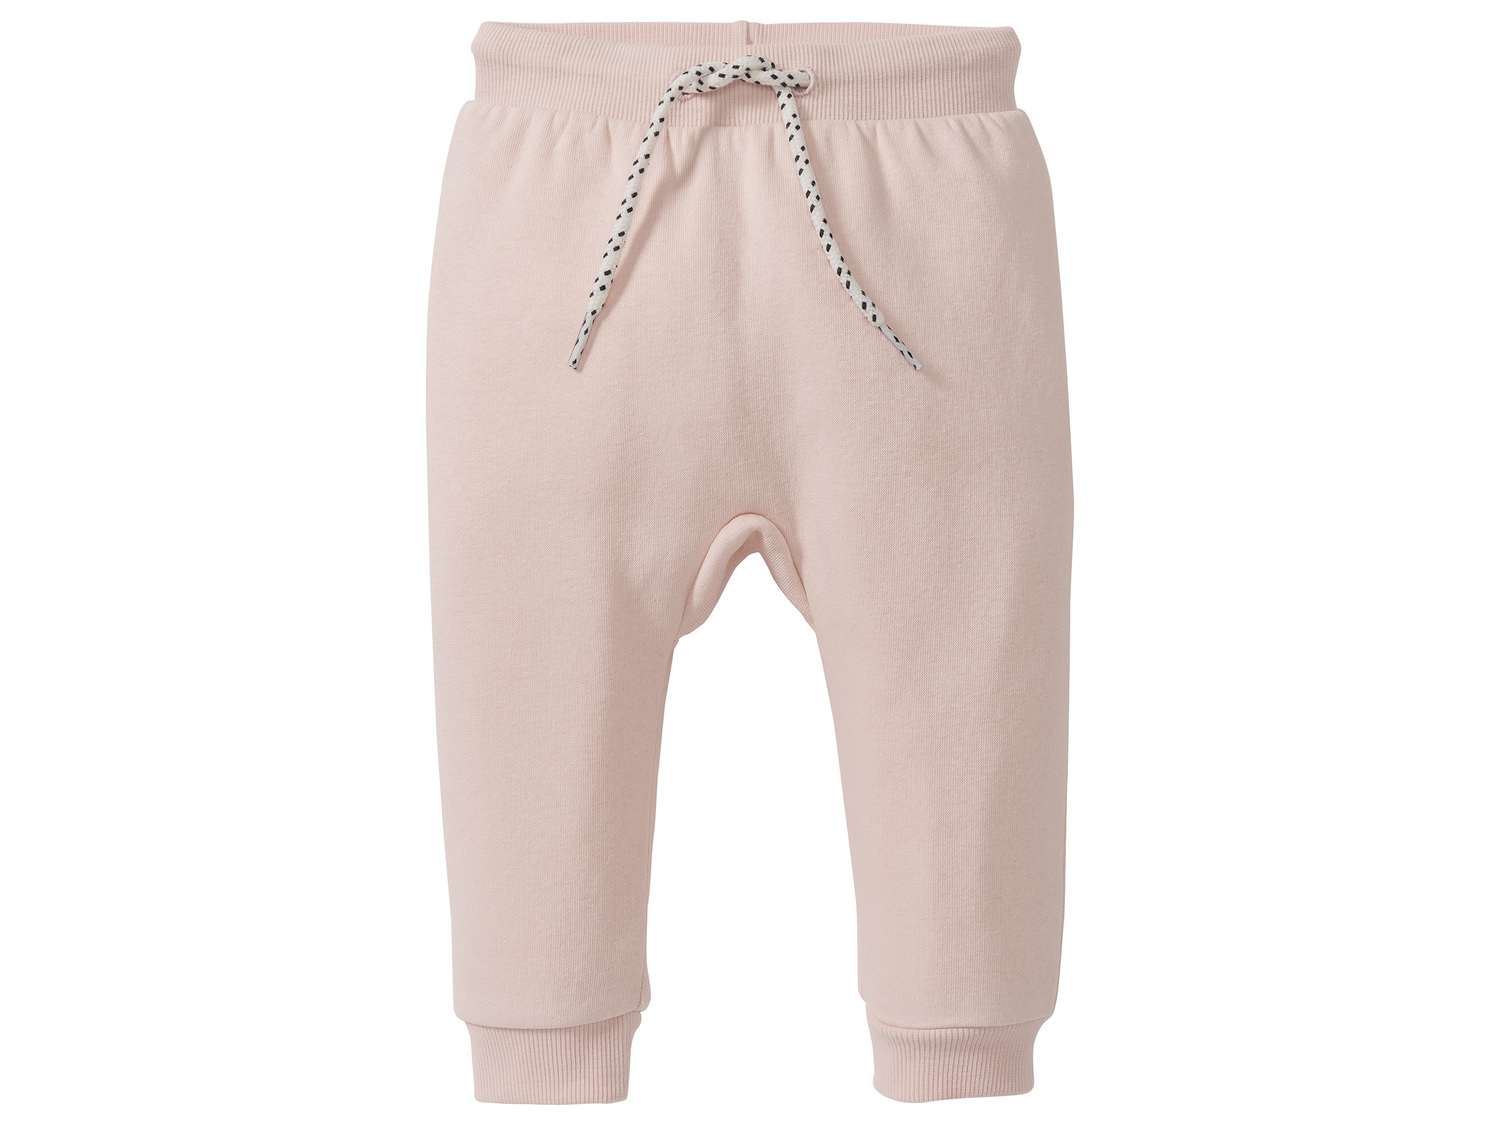 Pantalon molletonné bébé , le prix 2.99 € 
- Ex. 80 % coton et 20 % polyester
- ...